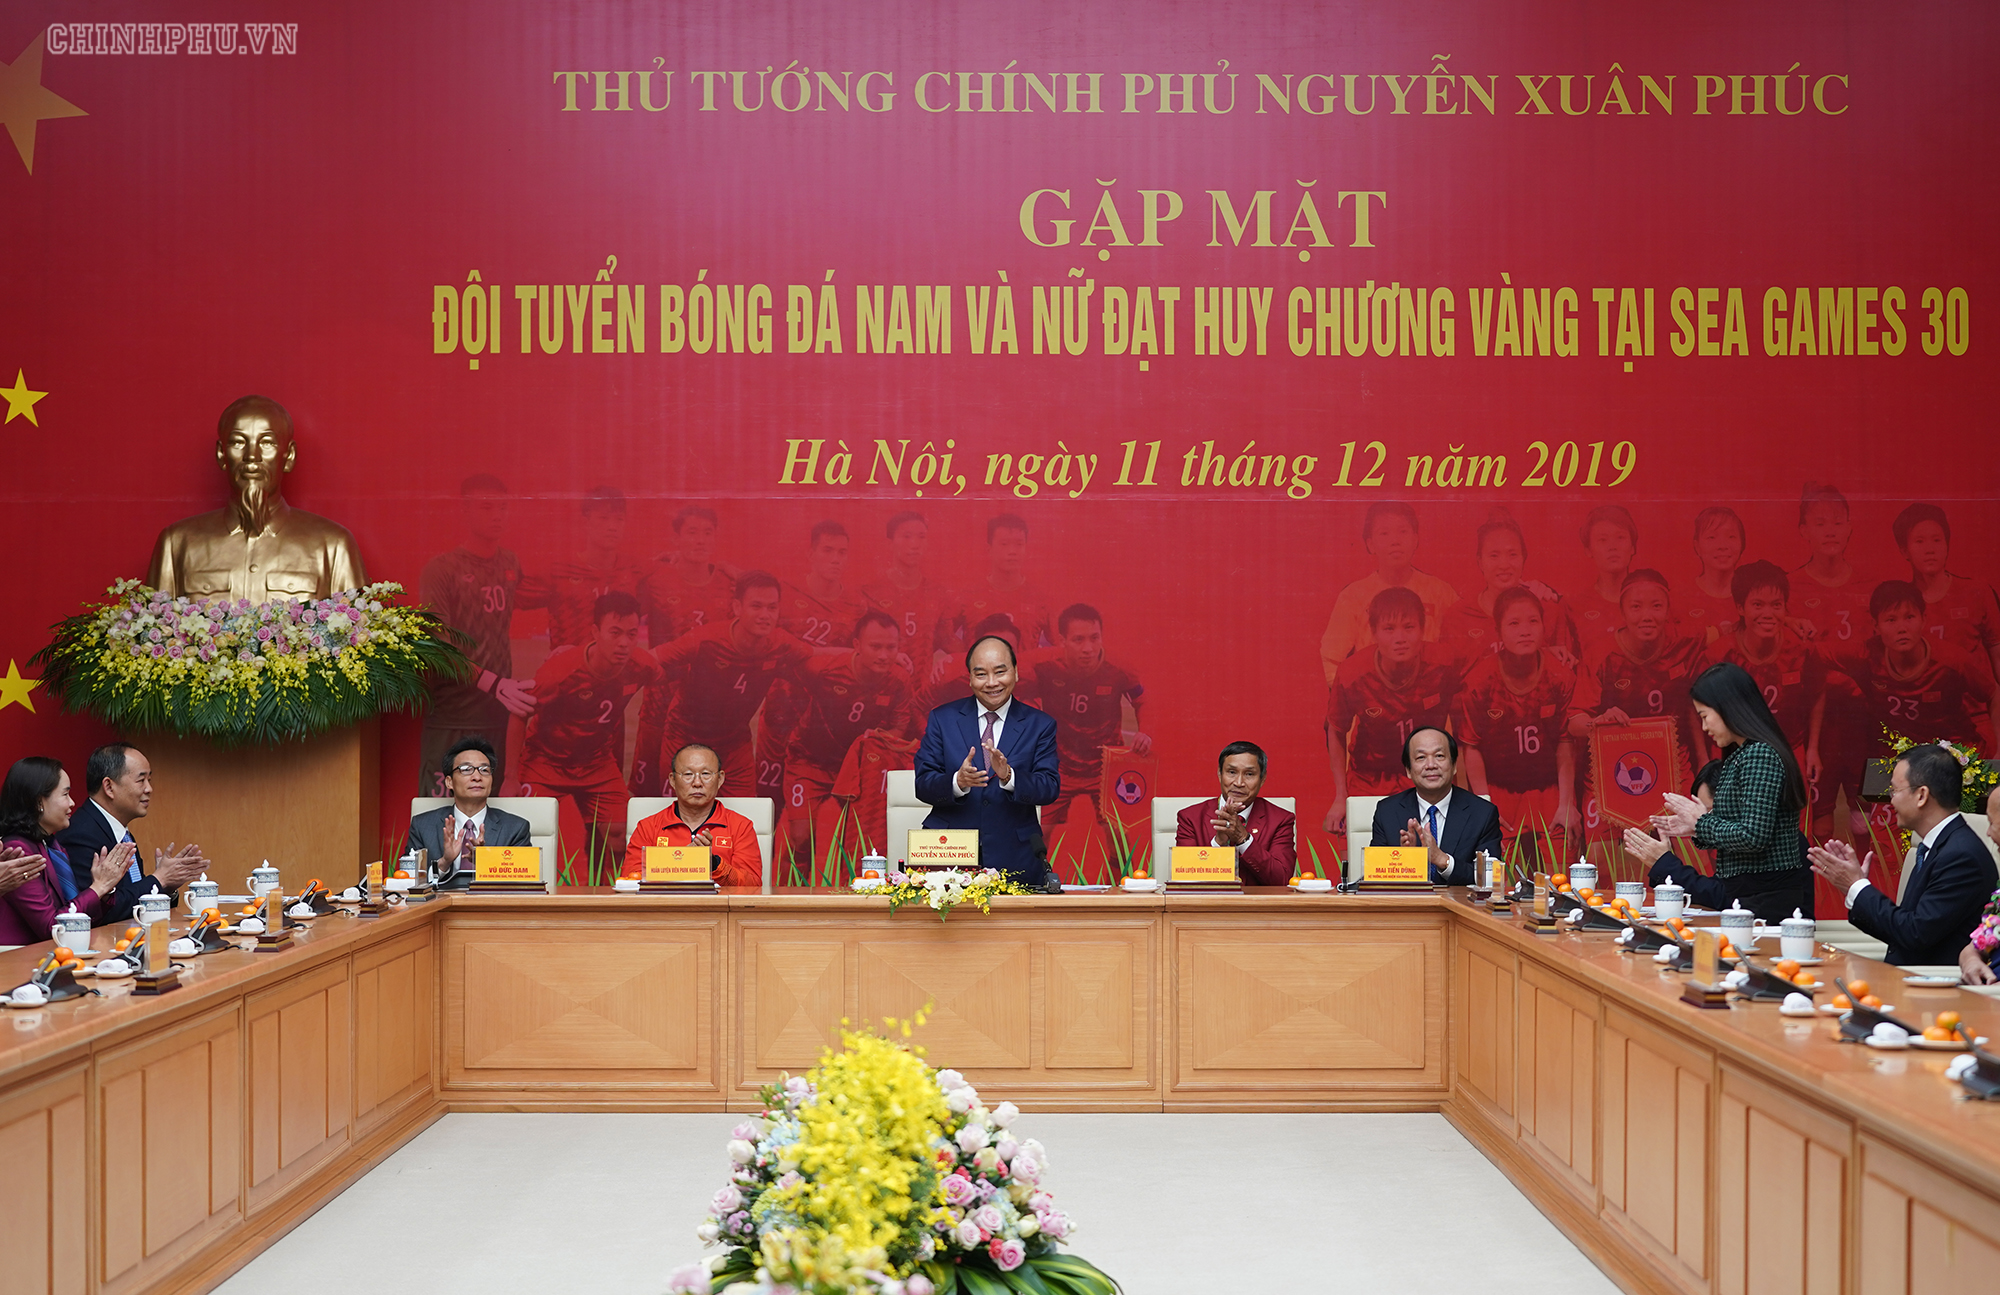 Thủ tướng giải mã kỳ tích của bóng đá Việt Nam